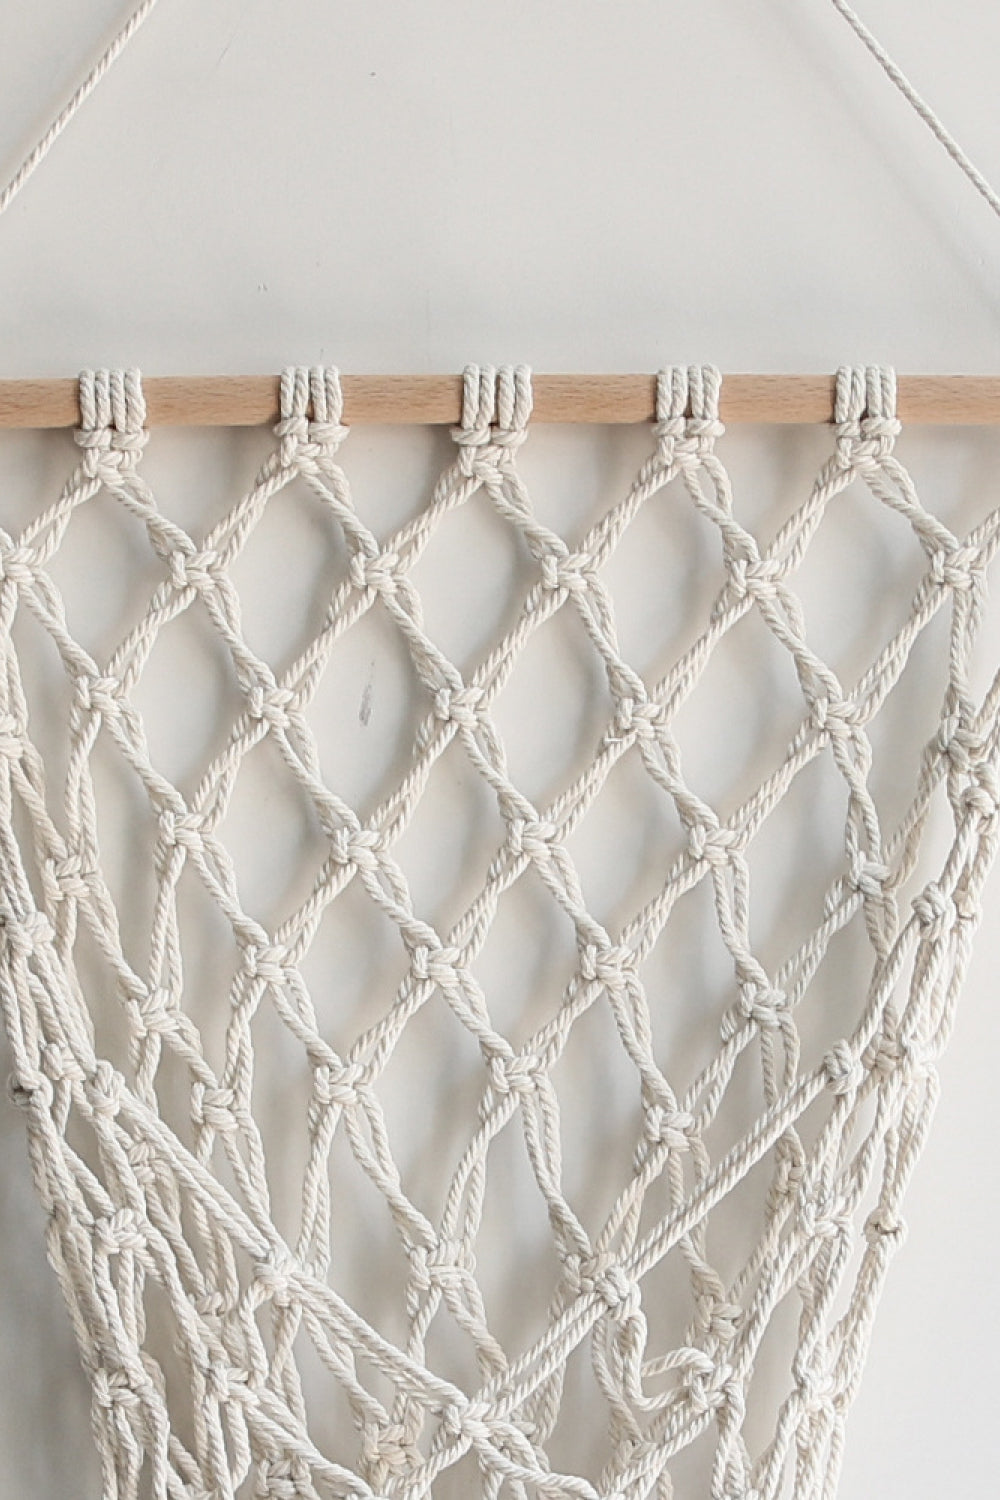 Macrame Basket Wall Hanging - Premium  - Just $21! Shop now at Nine Thirty Nine Design